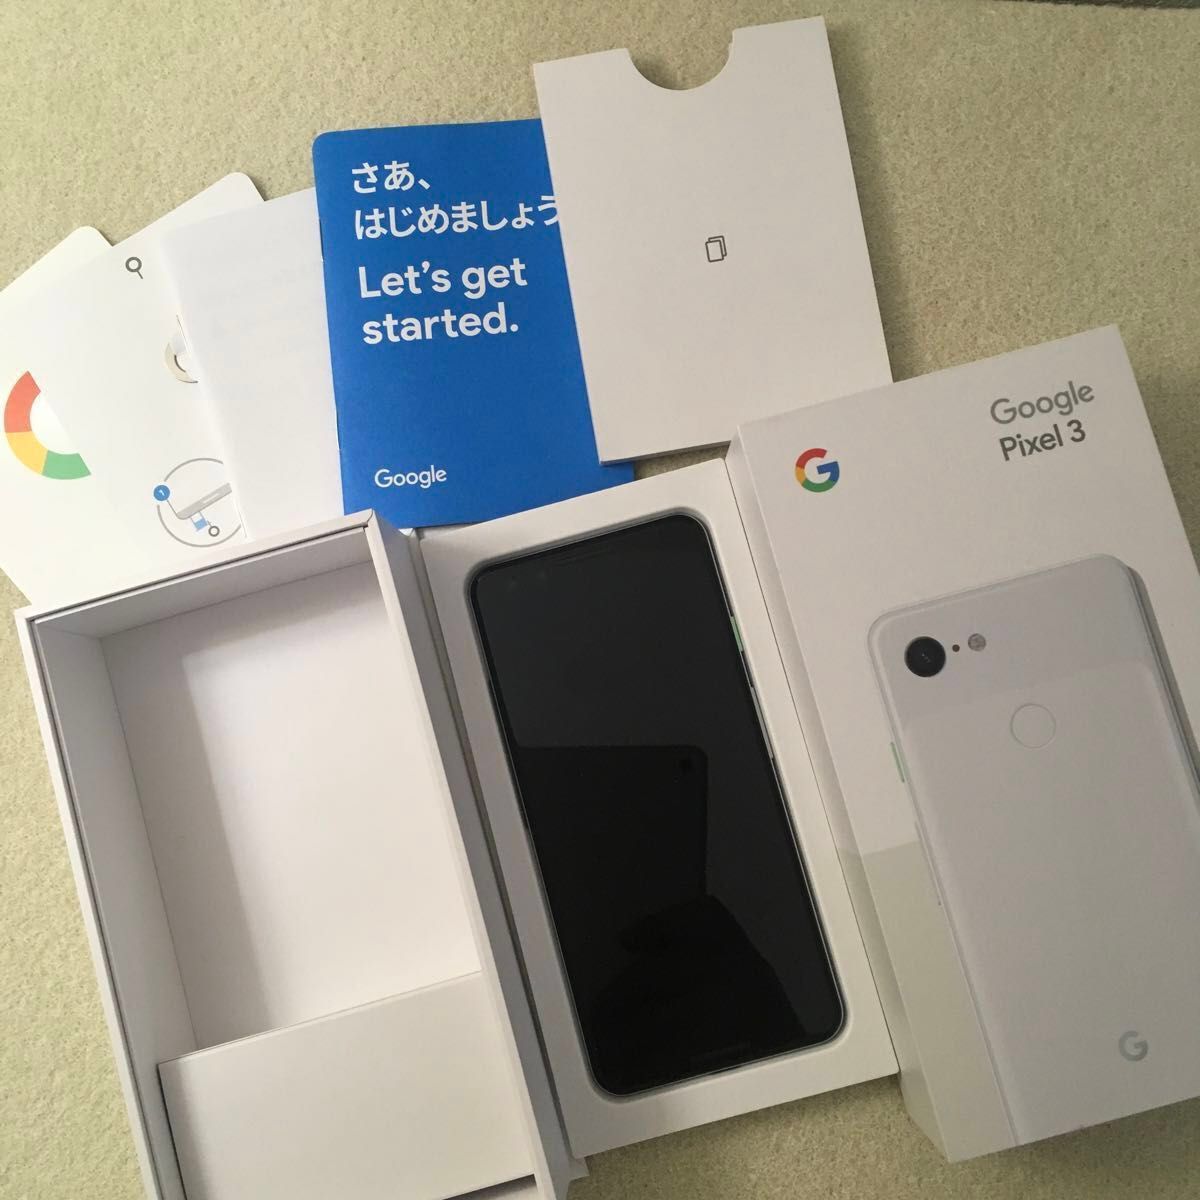 Google Pixel 3 SIMフリー